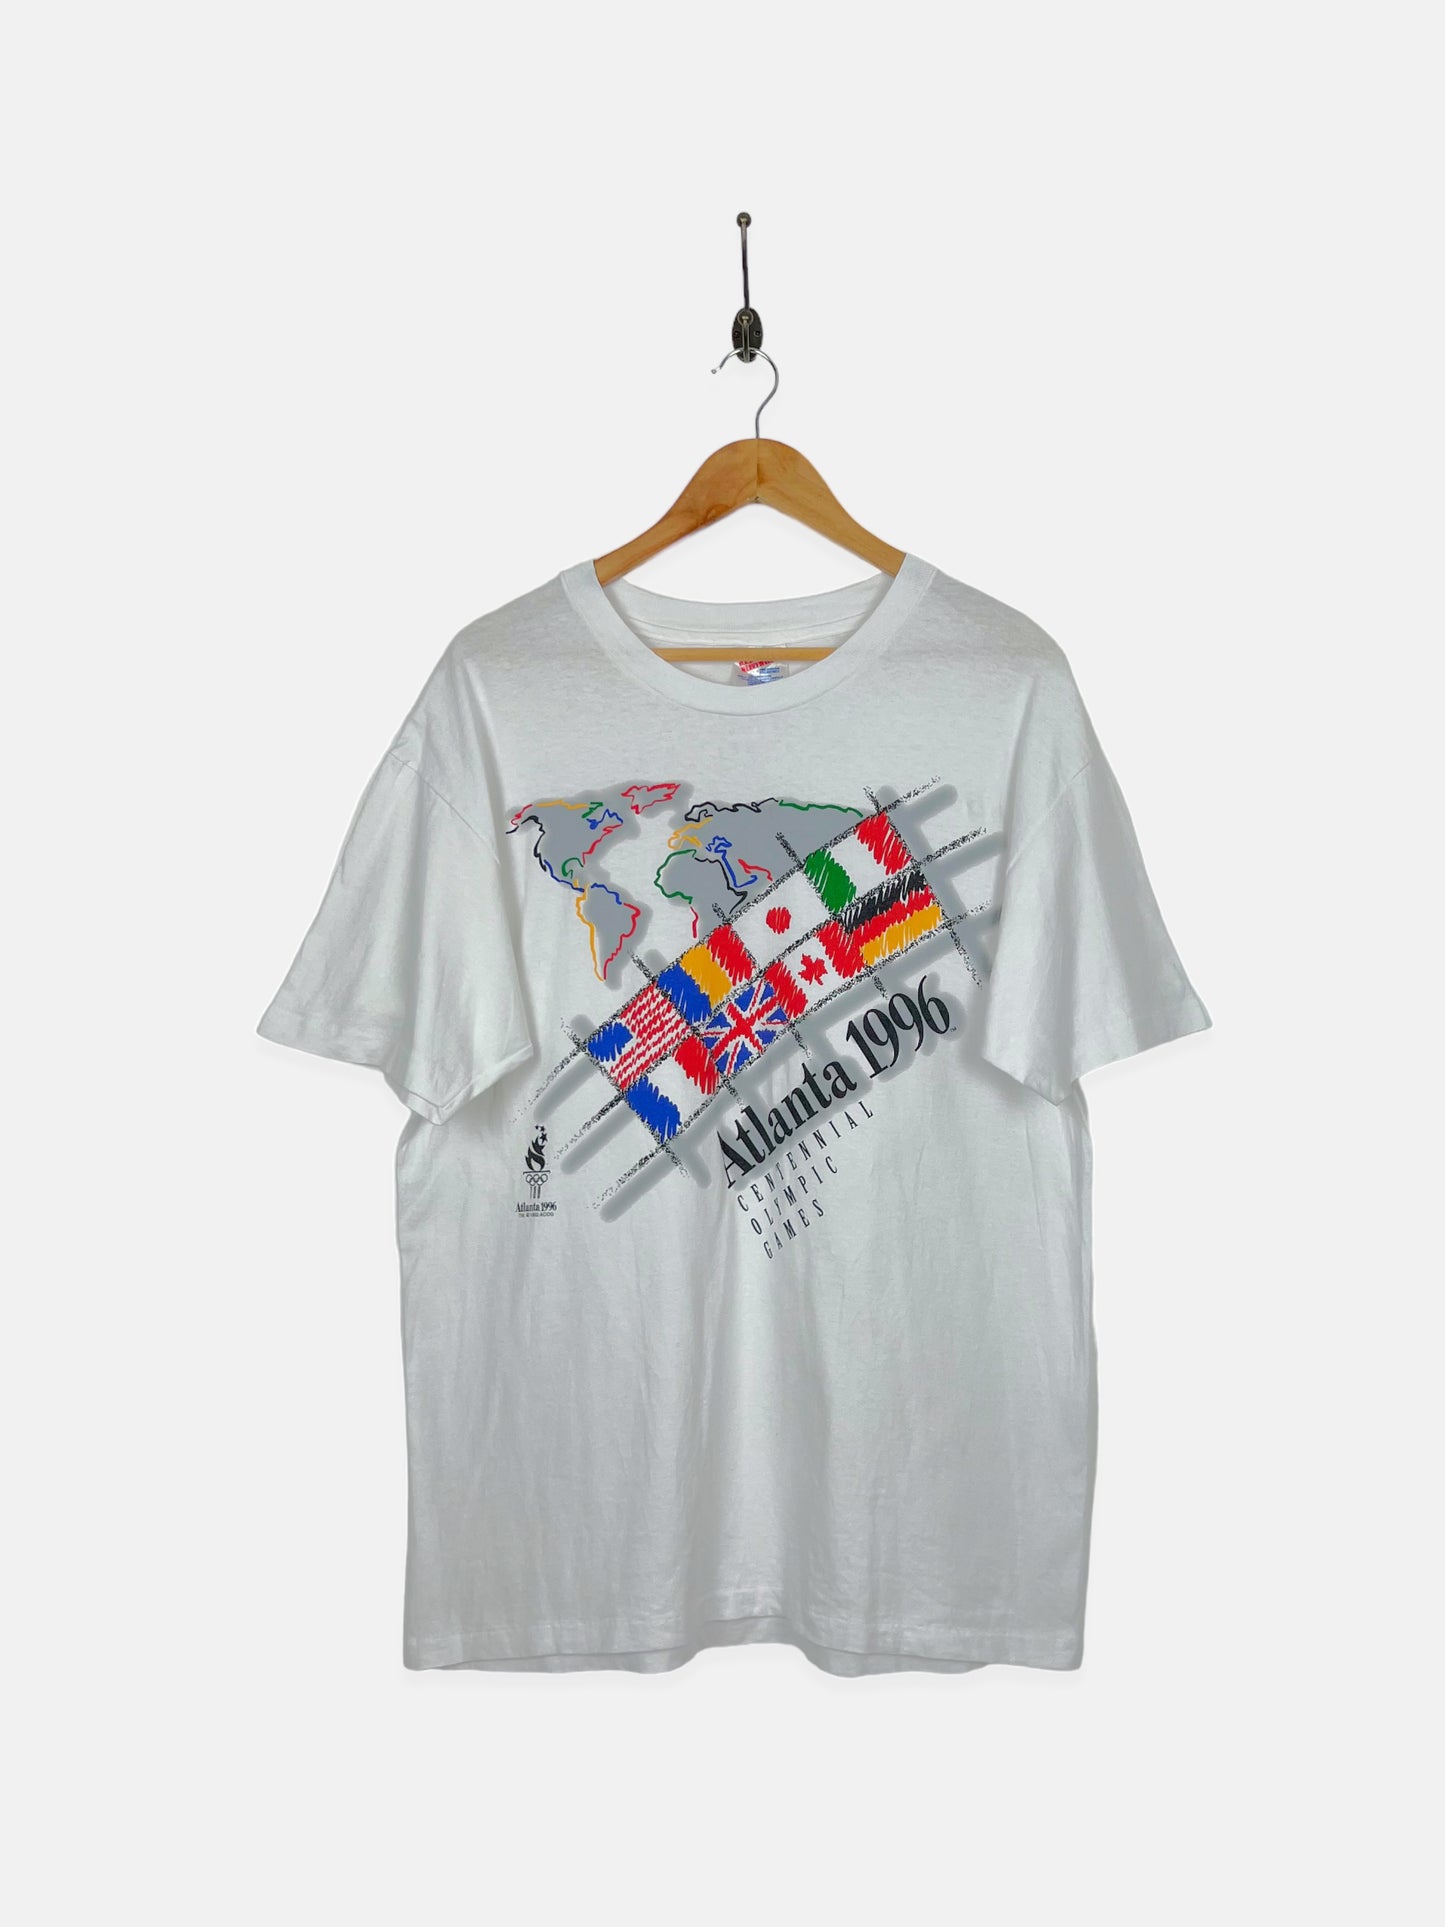 1996 Atlanta Olympics Vintage T-Shirt Size L